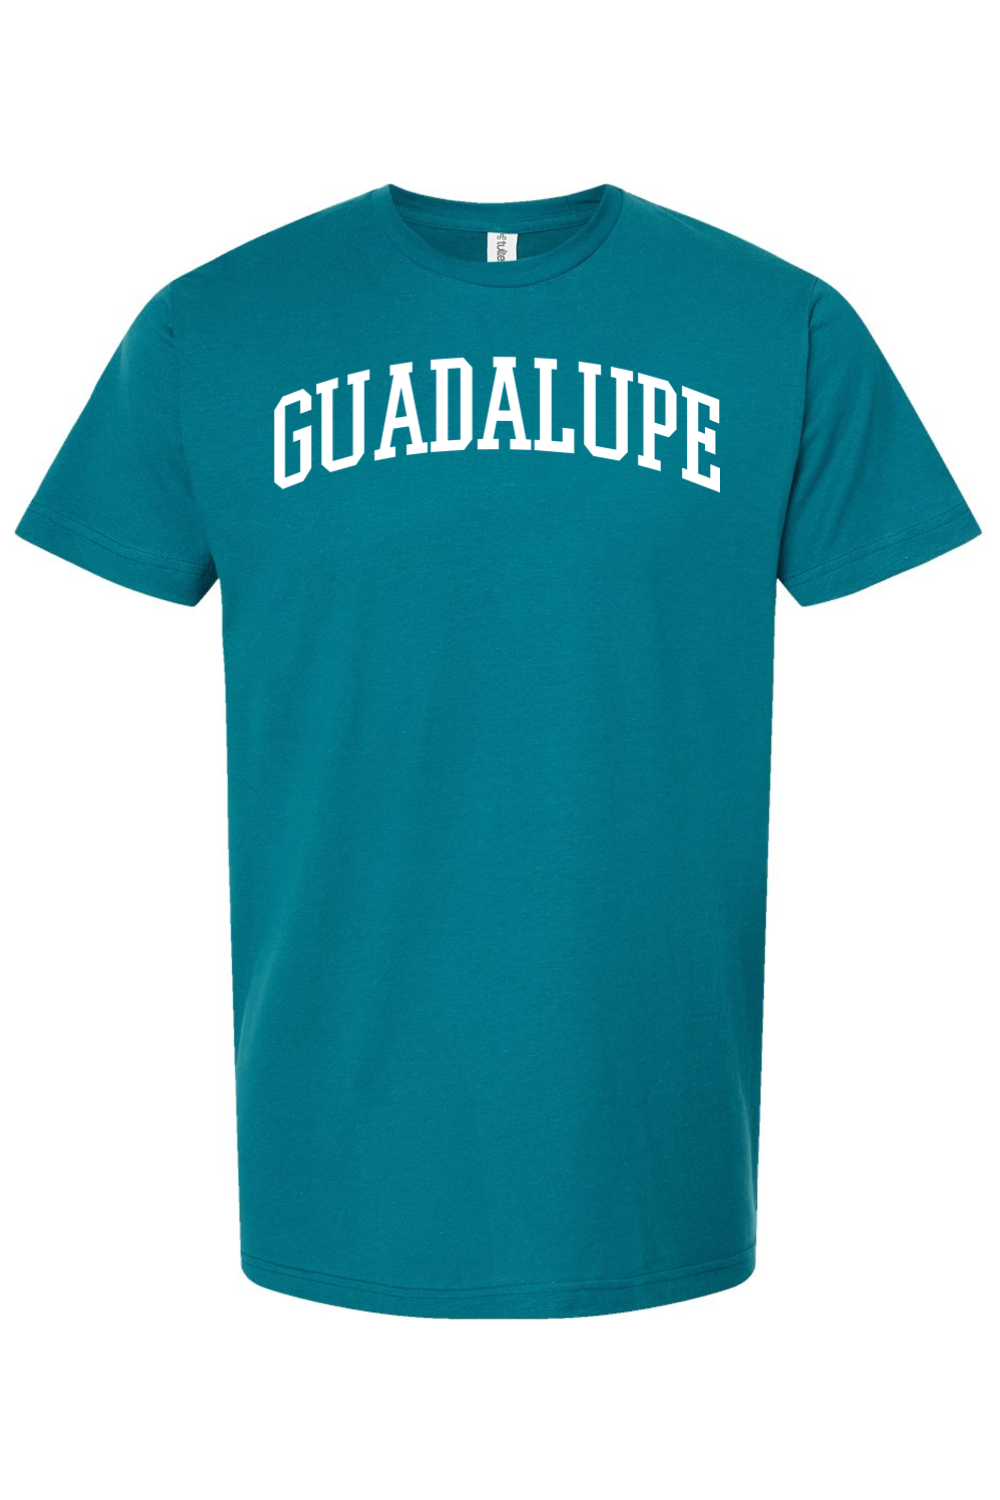 Guadalupe - Collegiate